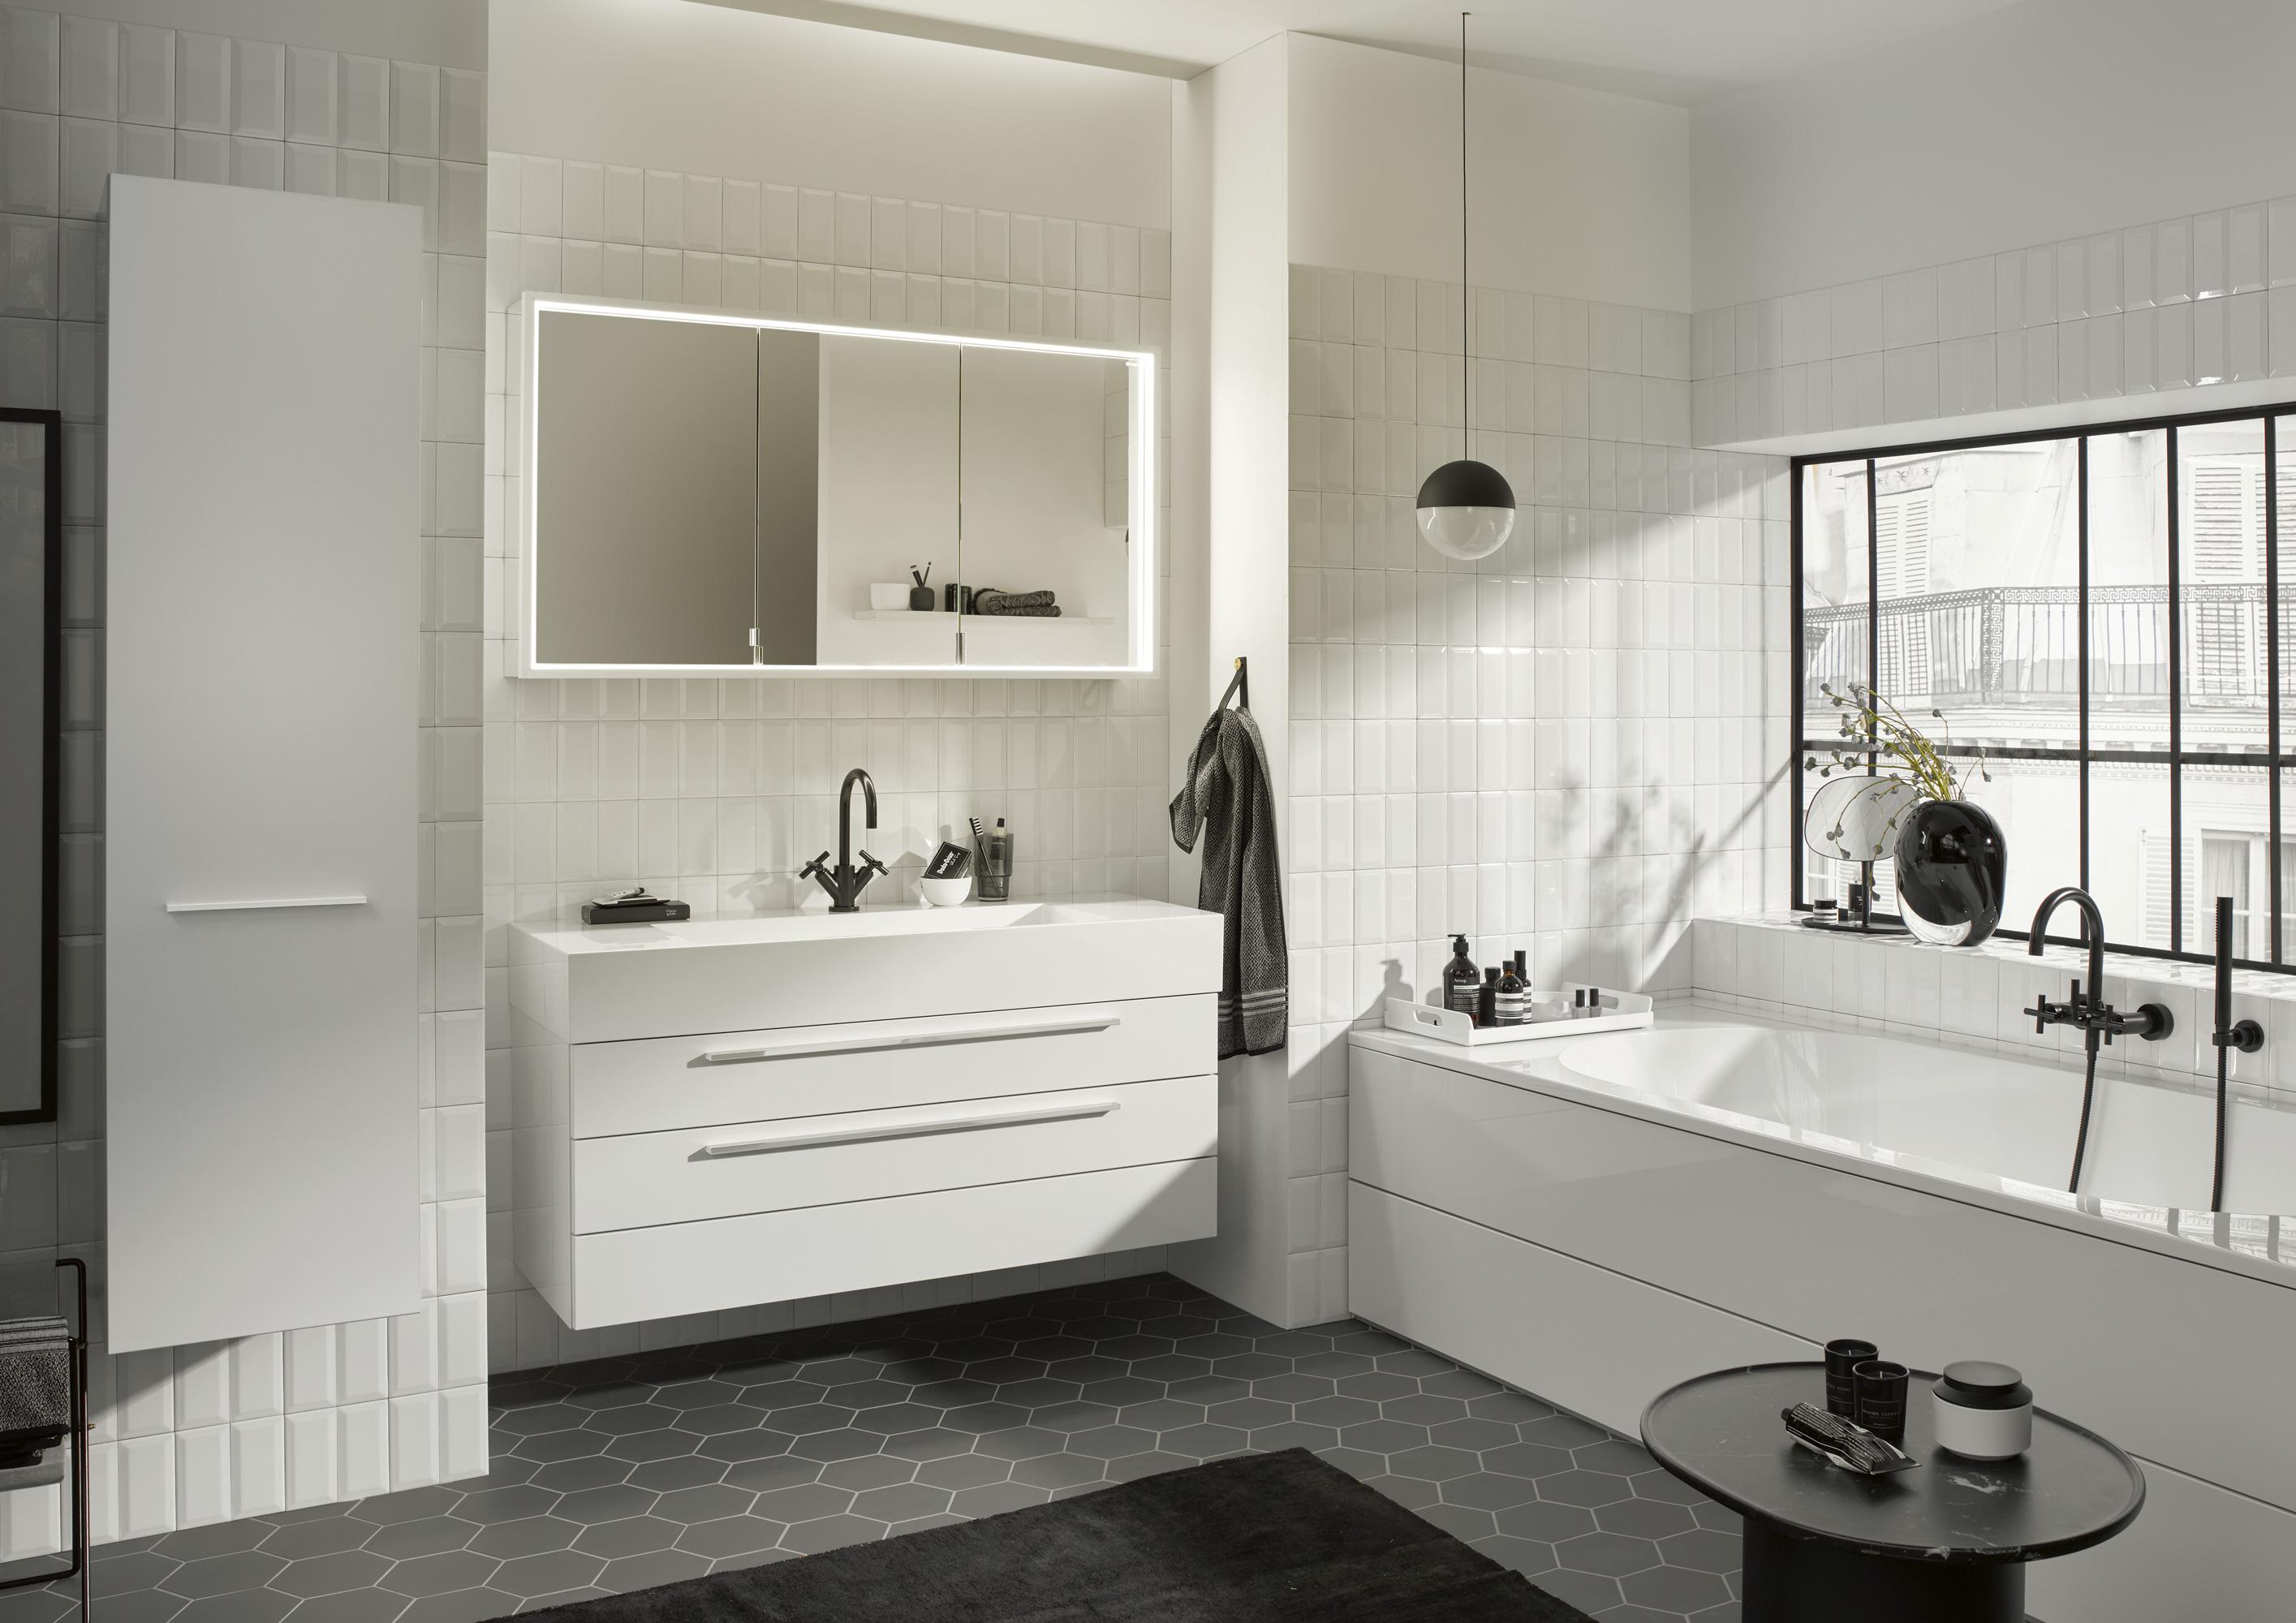 Badezimmer mit Mineralguss-Waschtisch und Spiegelschrank aus der Serie Crono #badewanne #badezimmer #waschtisch #badmöbel #waschbecken #beleuchtung #spiegelschrank ©burgbad